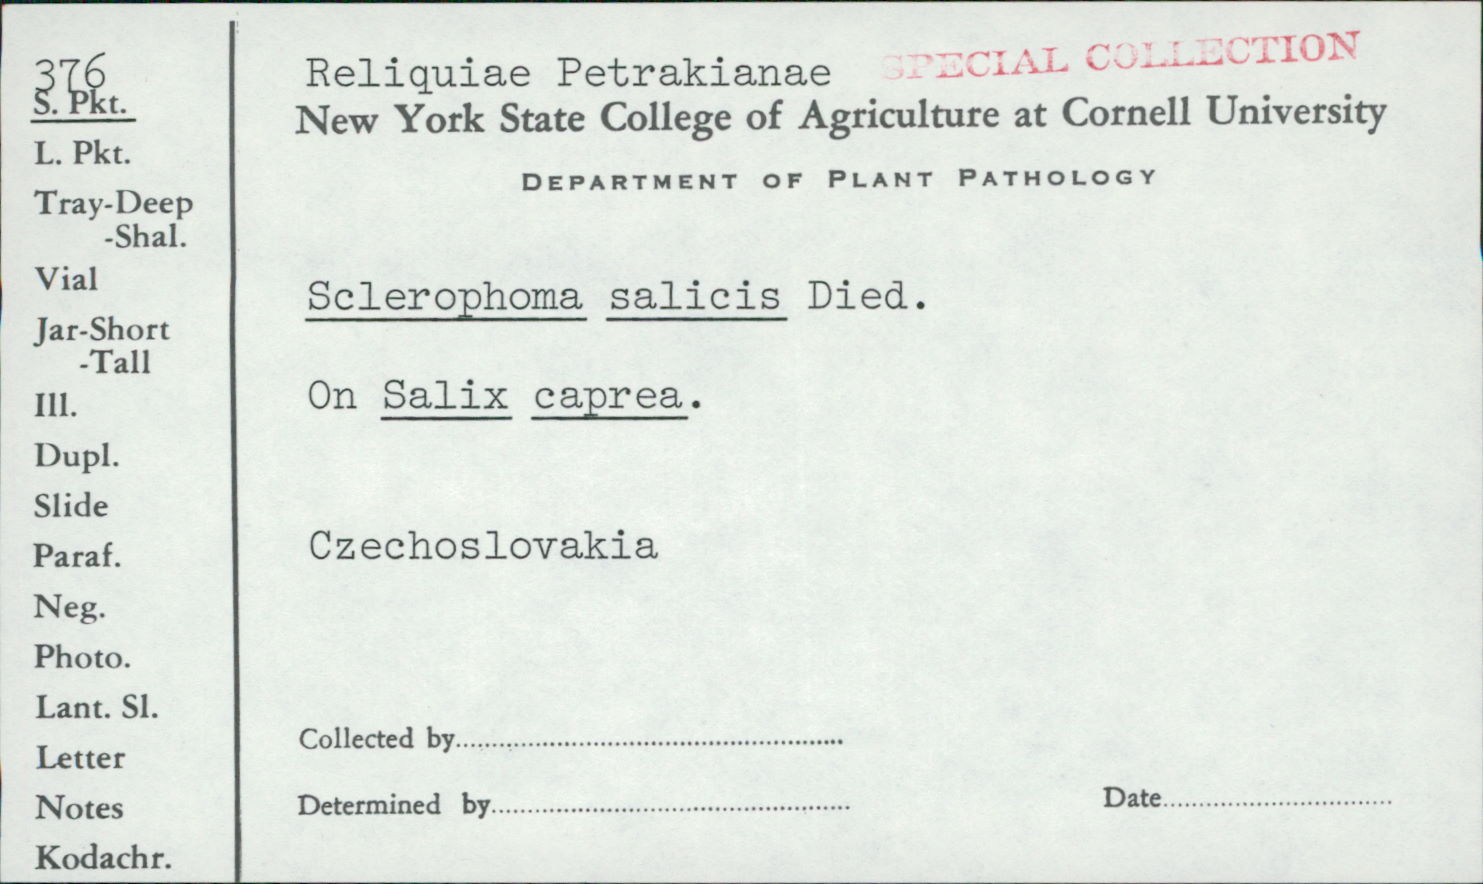 Sclerophoma image